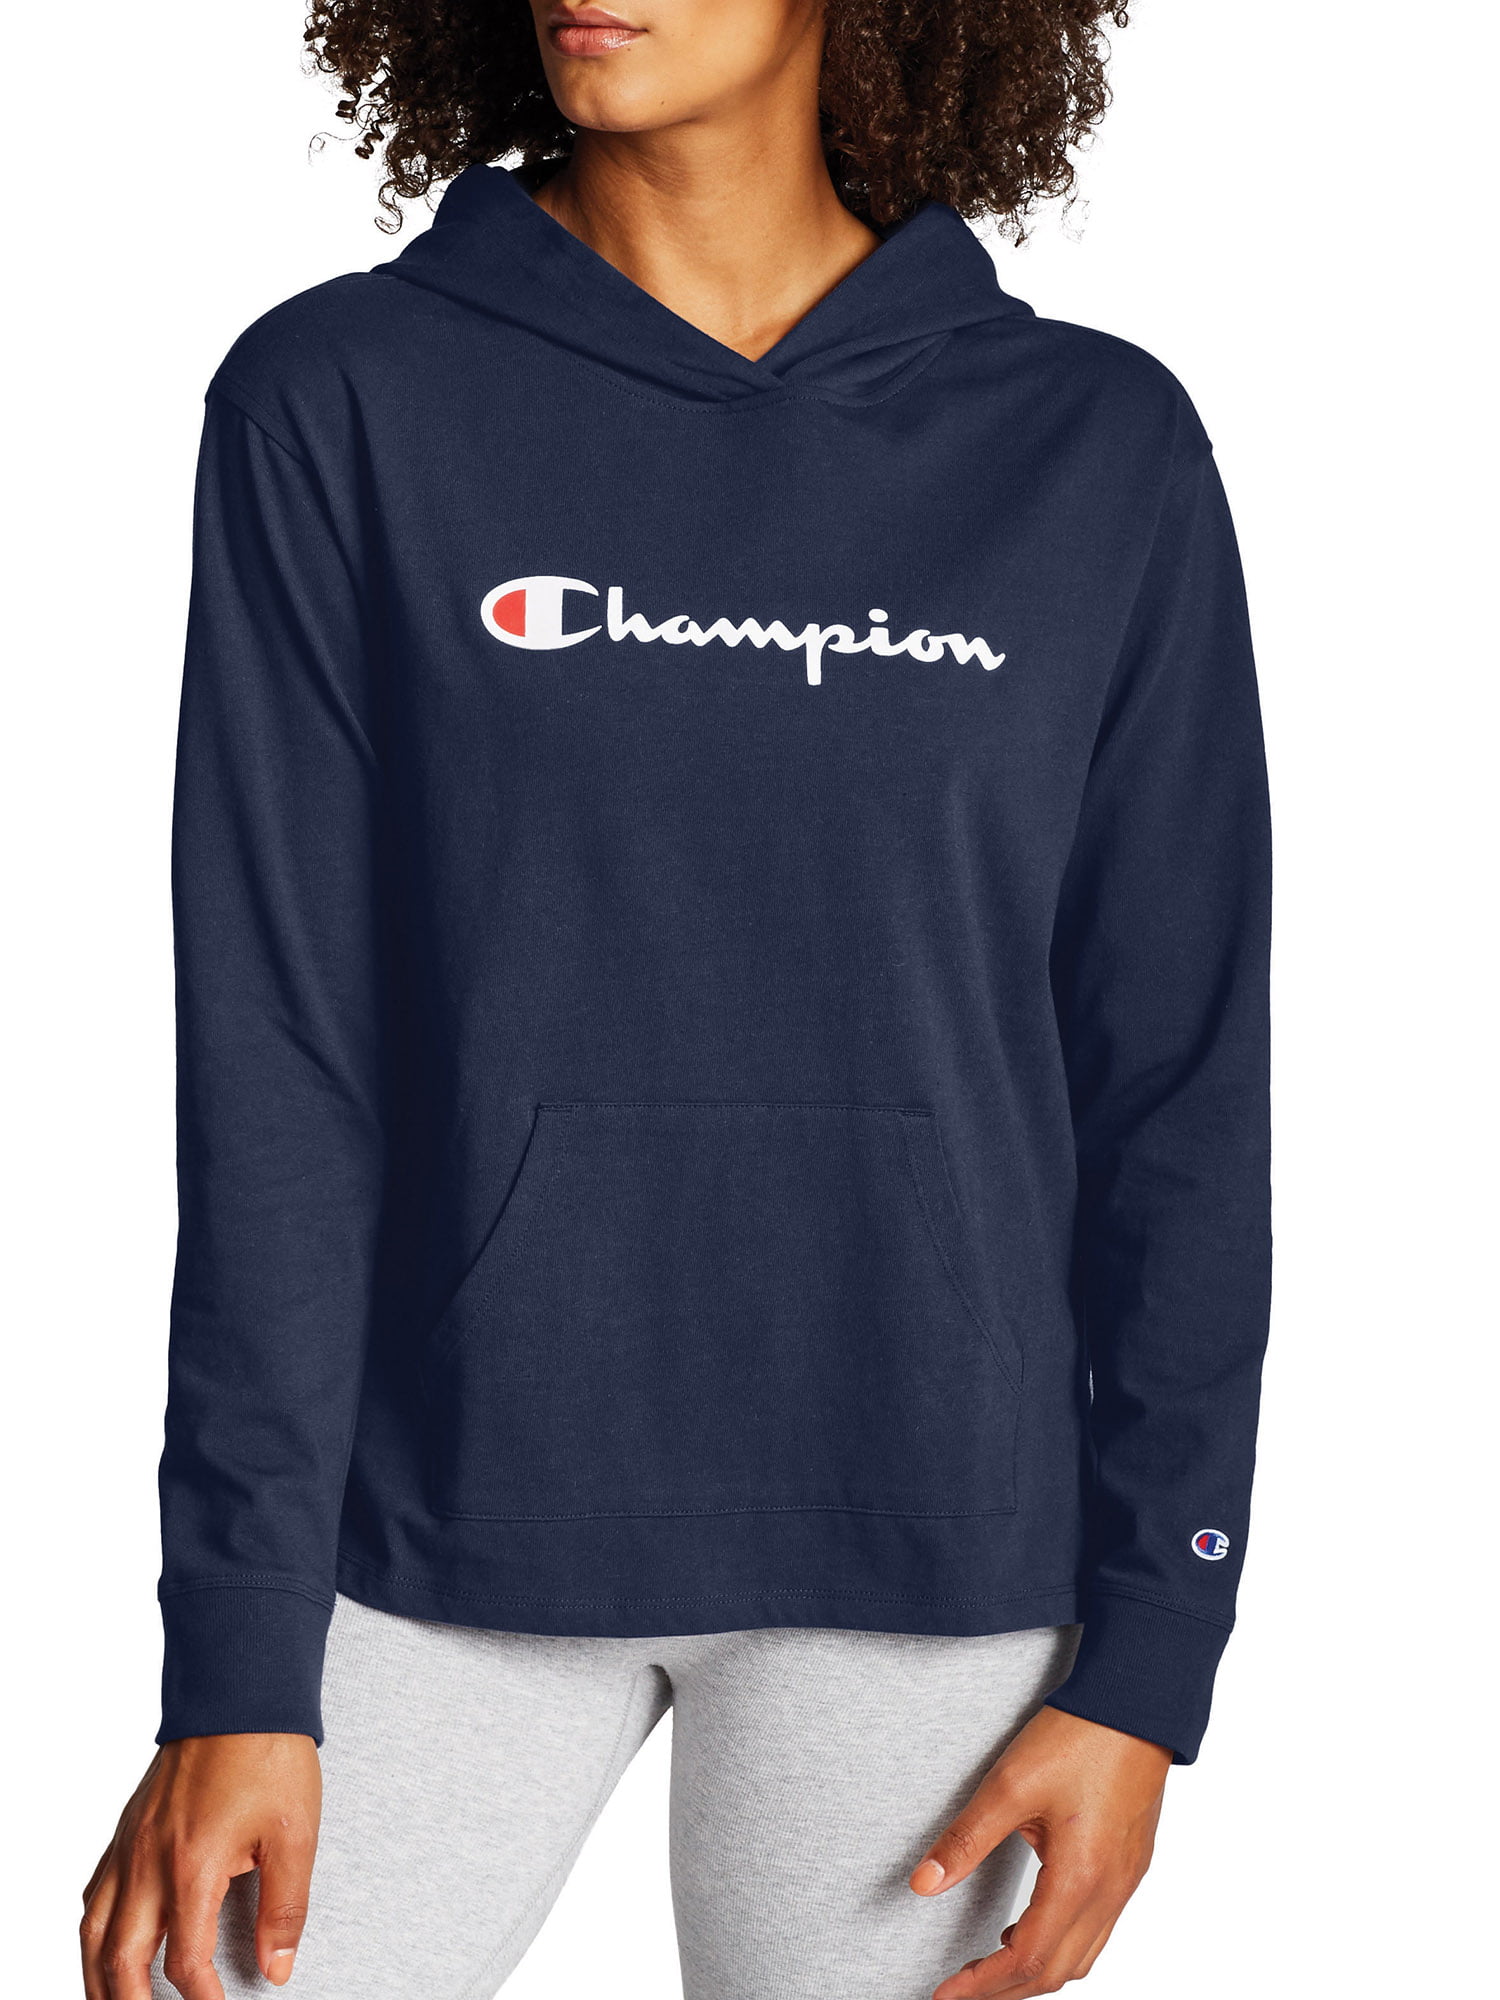 ladies black champion hoodie